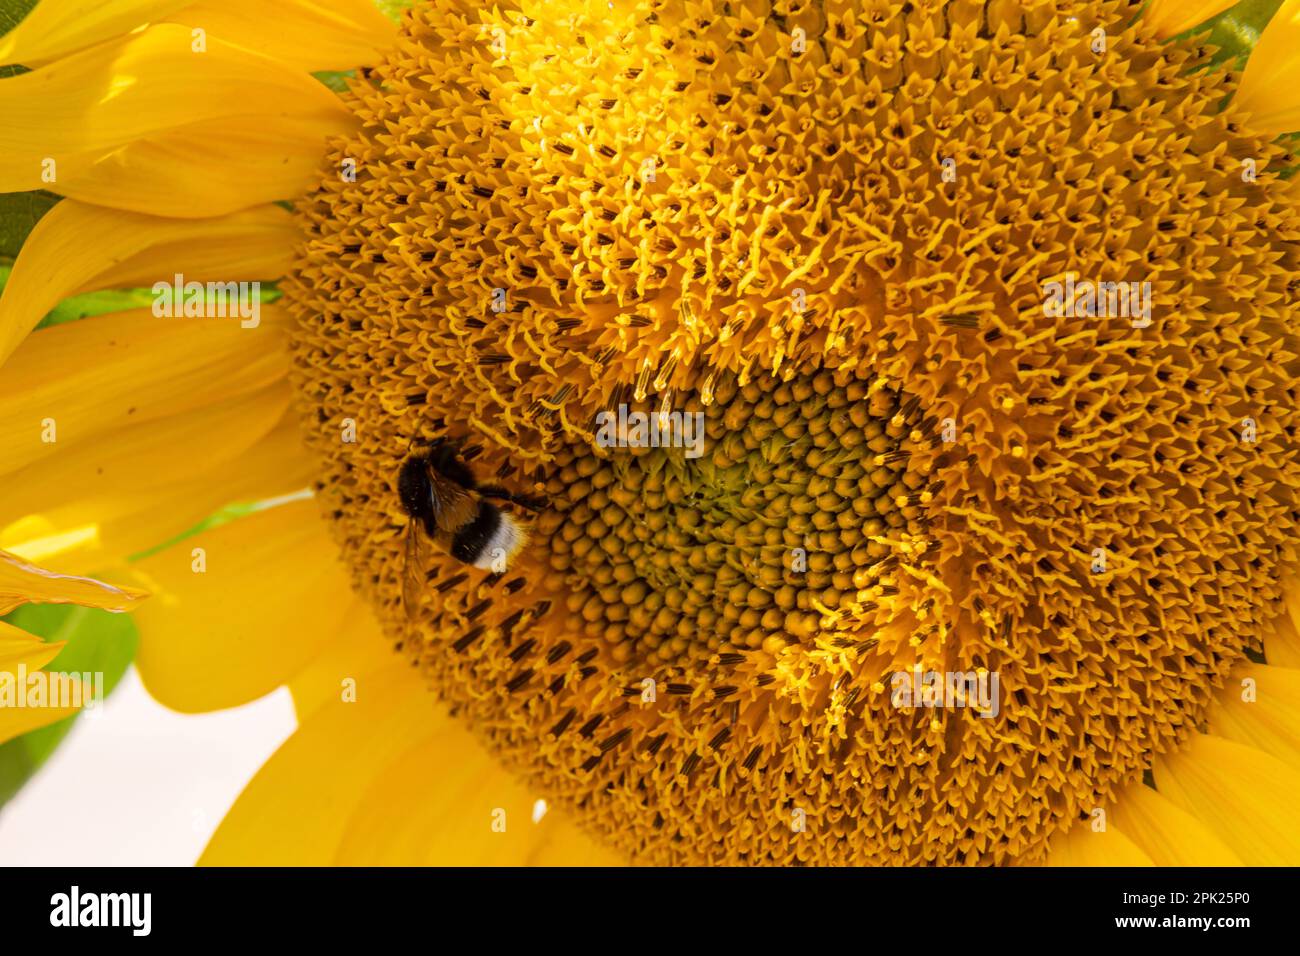 Abeille rayée noire et jaune, abeille, tournesol pollinisant vue rapprochée de bas niveau d'une tête de tournesol simple avec pétales jaunes et graines noires Banque D'Images